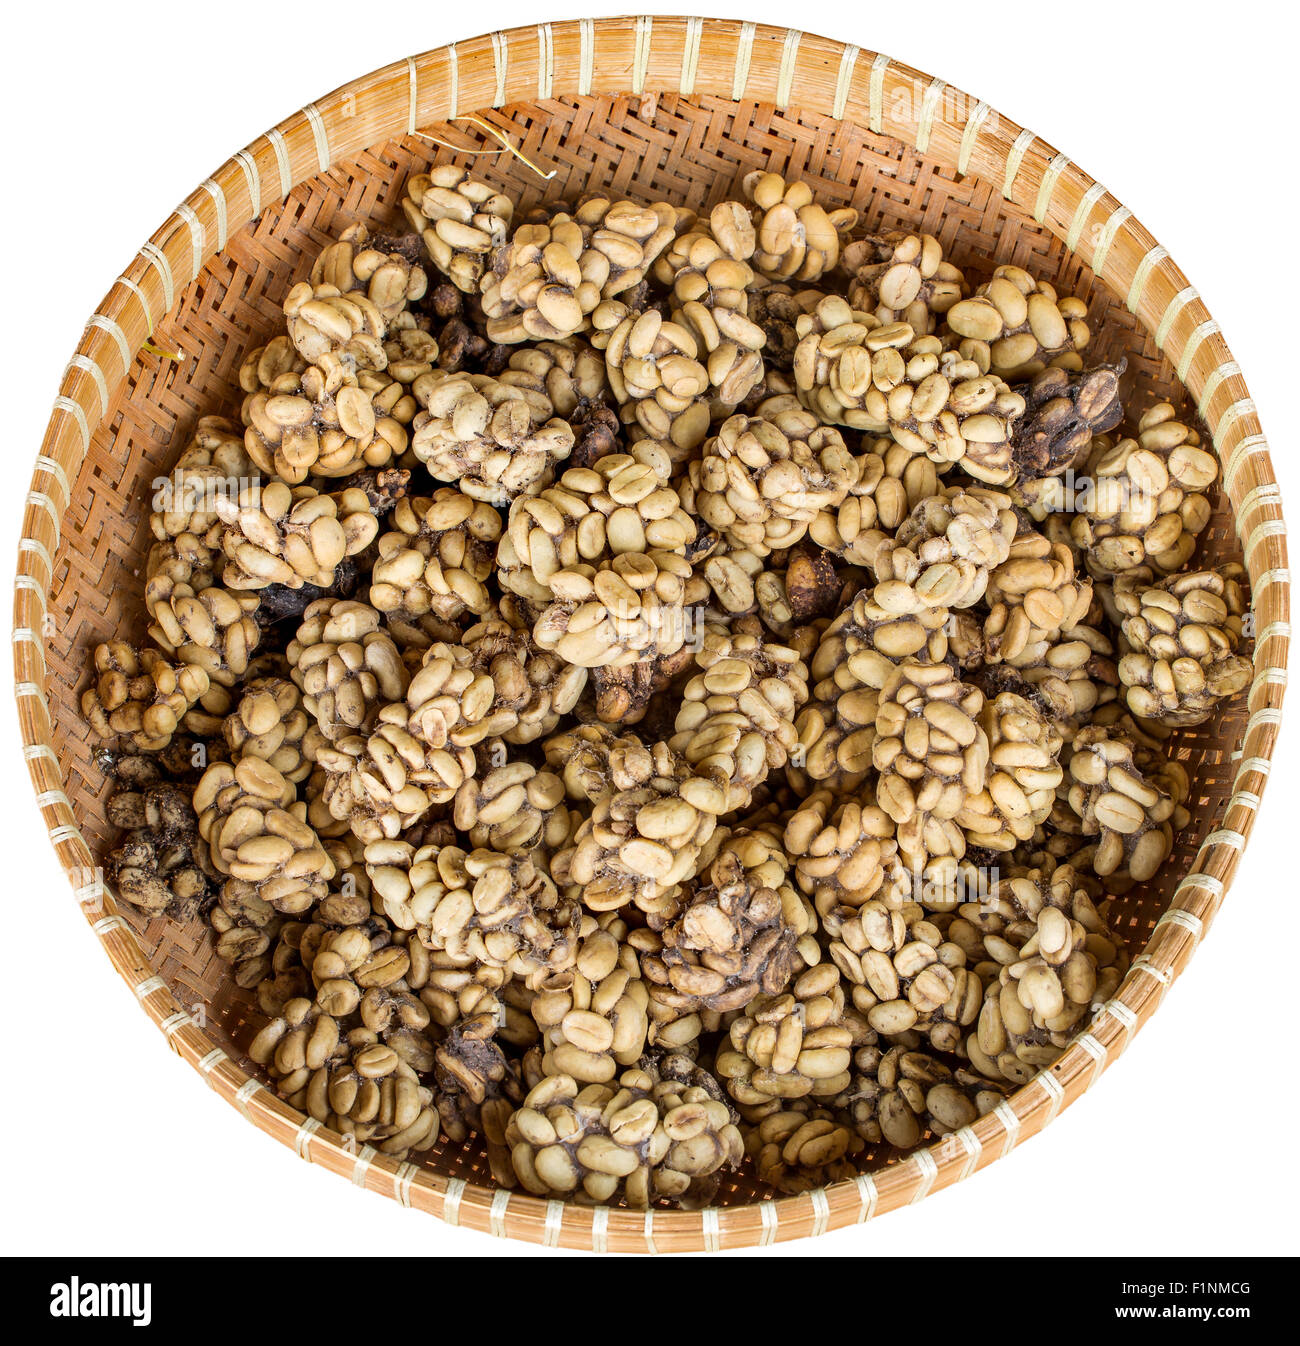 Ttray der Zibetkatze Poo mit verdaut Kaffeebohnen isoliert auf weiss. Einmal geröstet, die Kaffee - bekannt als Kopi Luwak - Fetc Stockfoto